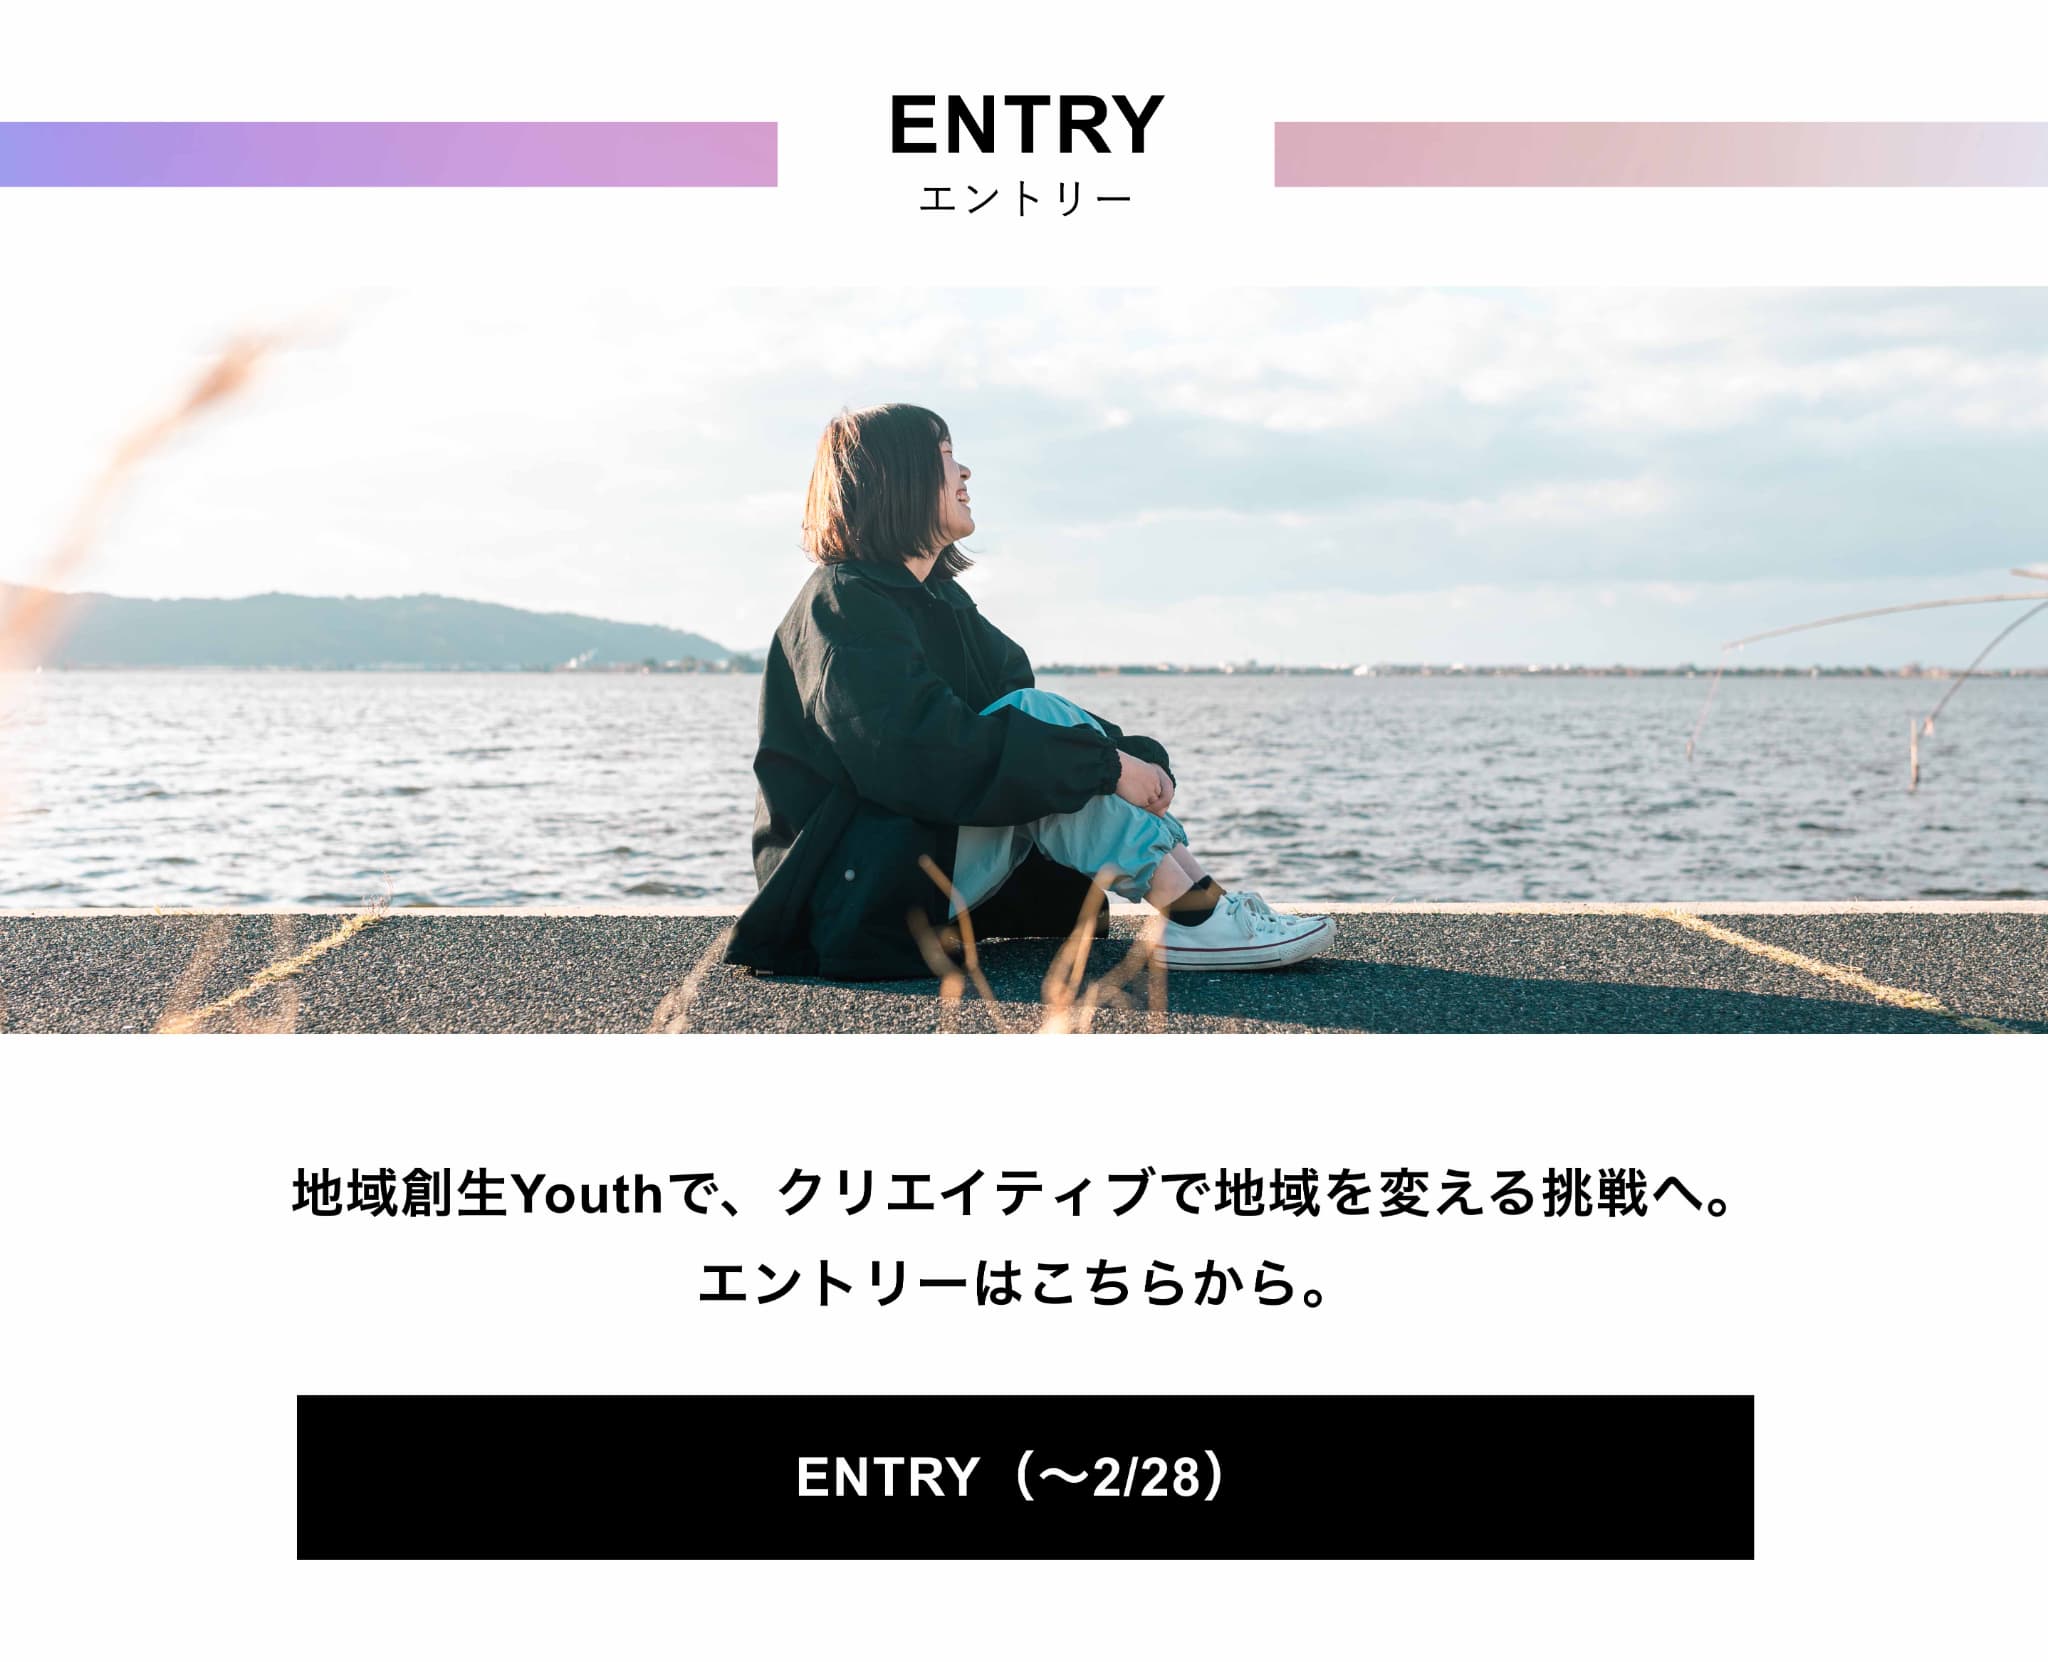 Entry-エンントリー-